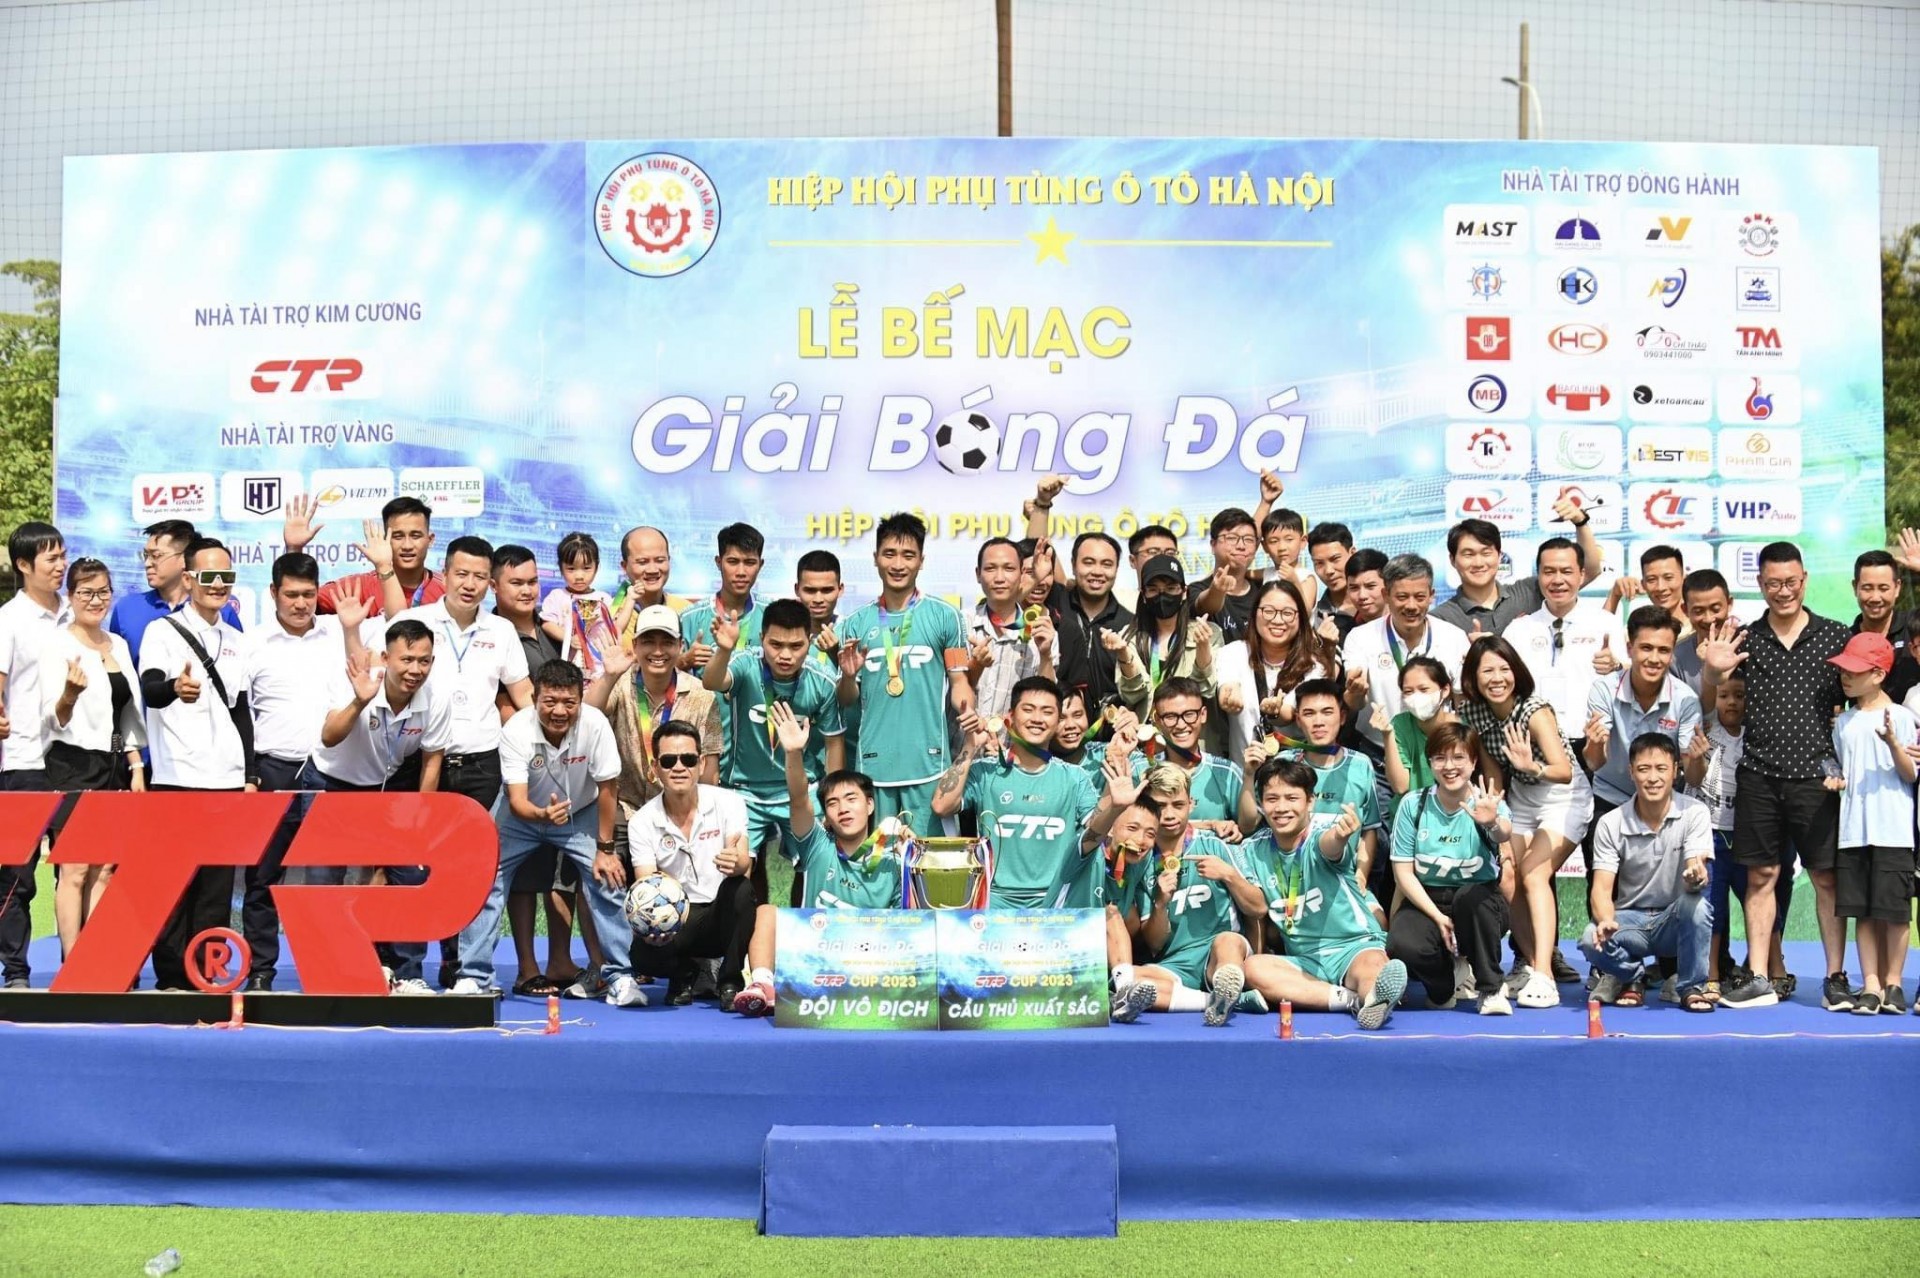 FC Mast lên ngôi vô địch Giải bóng đá Hiệp hội Phụ tùng ô tô Hà Nội lần thứ 12